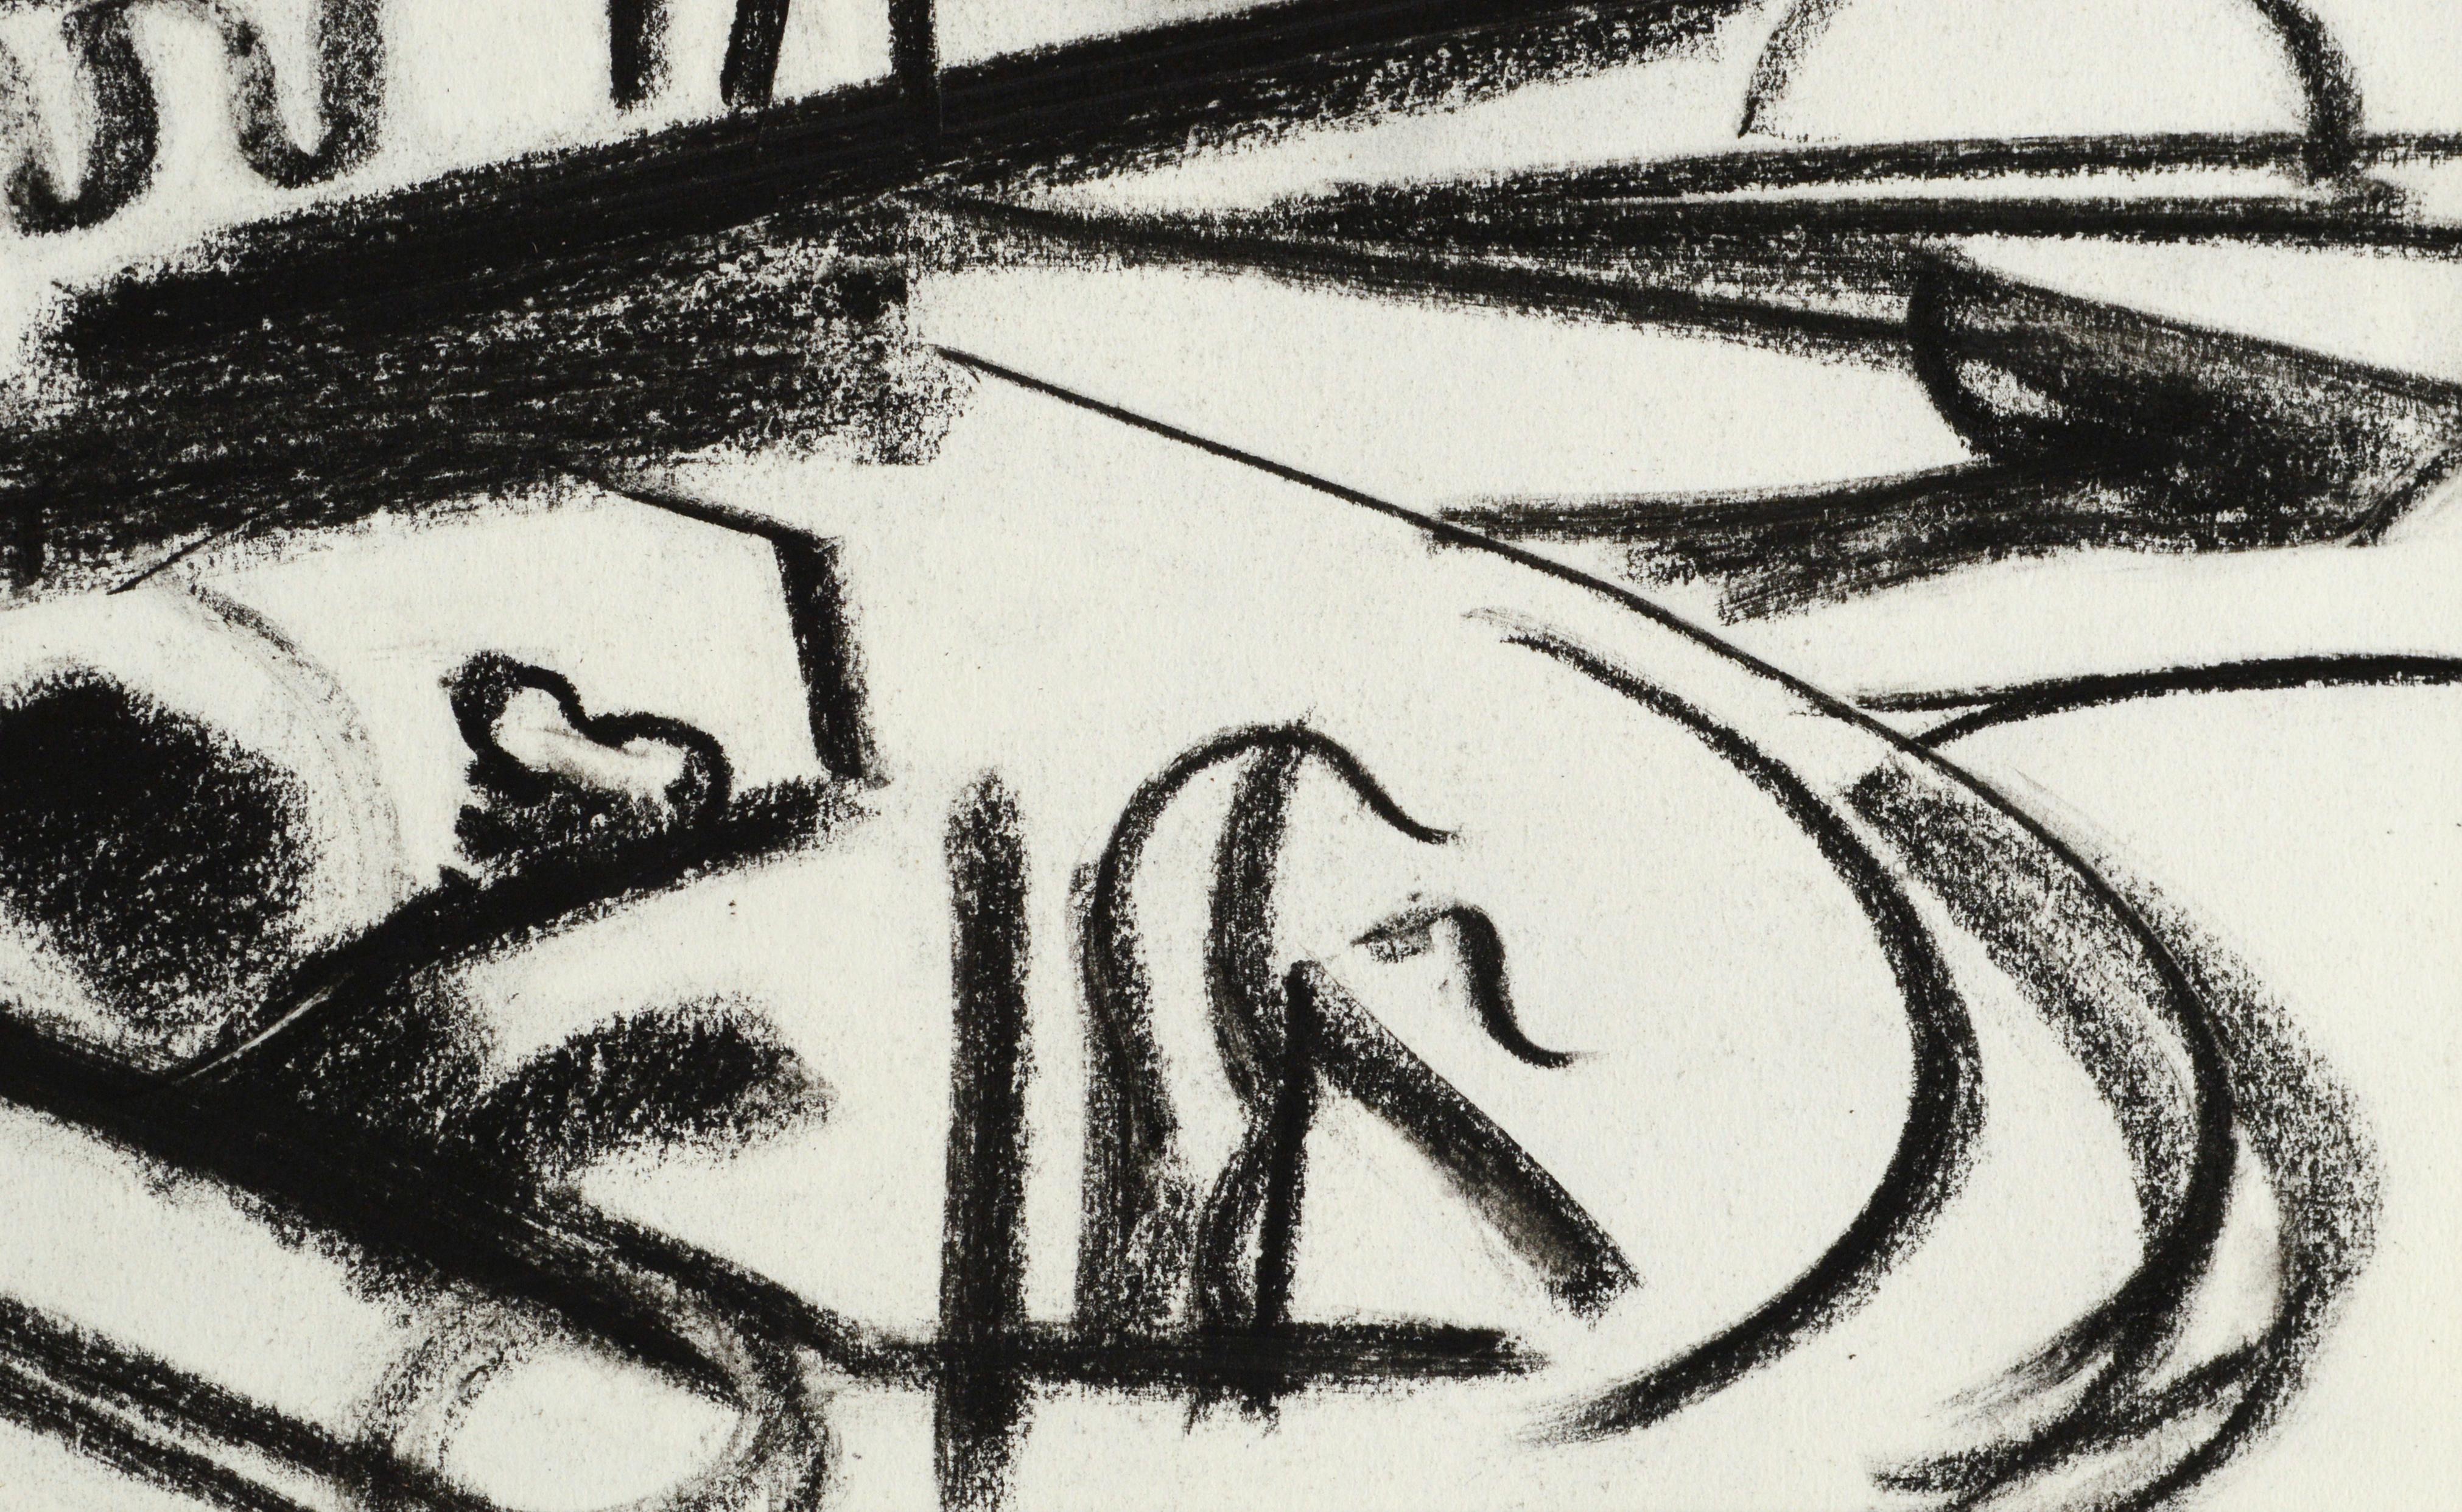 Kräftige abstrakte geometrische Landschaft, eine ausdrucksstarke schwarz-weiße Strichzeichnung in Pastell, von Erle Loran (Amerikaner, 1905-1999). Unsigniert, wurde aber aus dem Nachlass des Künstlers erworben. Präsentiert in einer neuen schwarzen